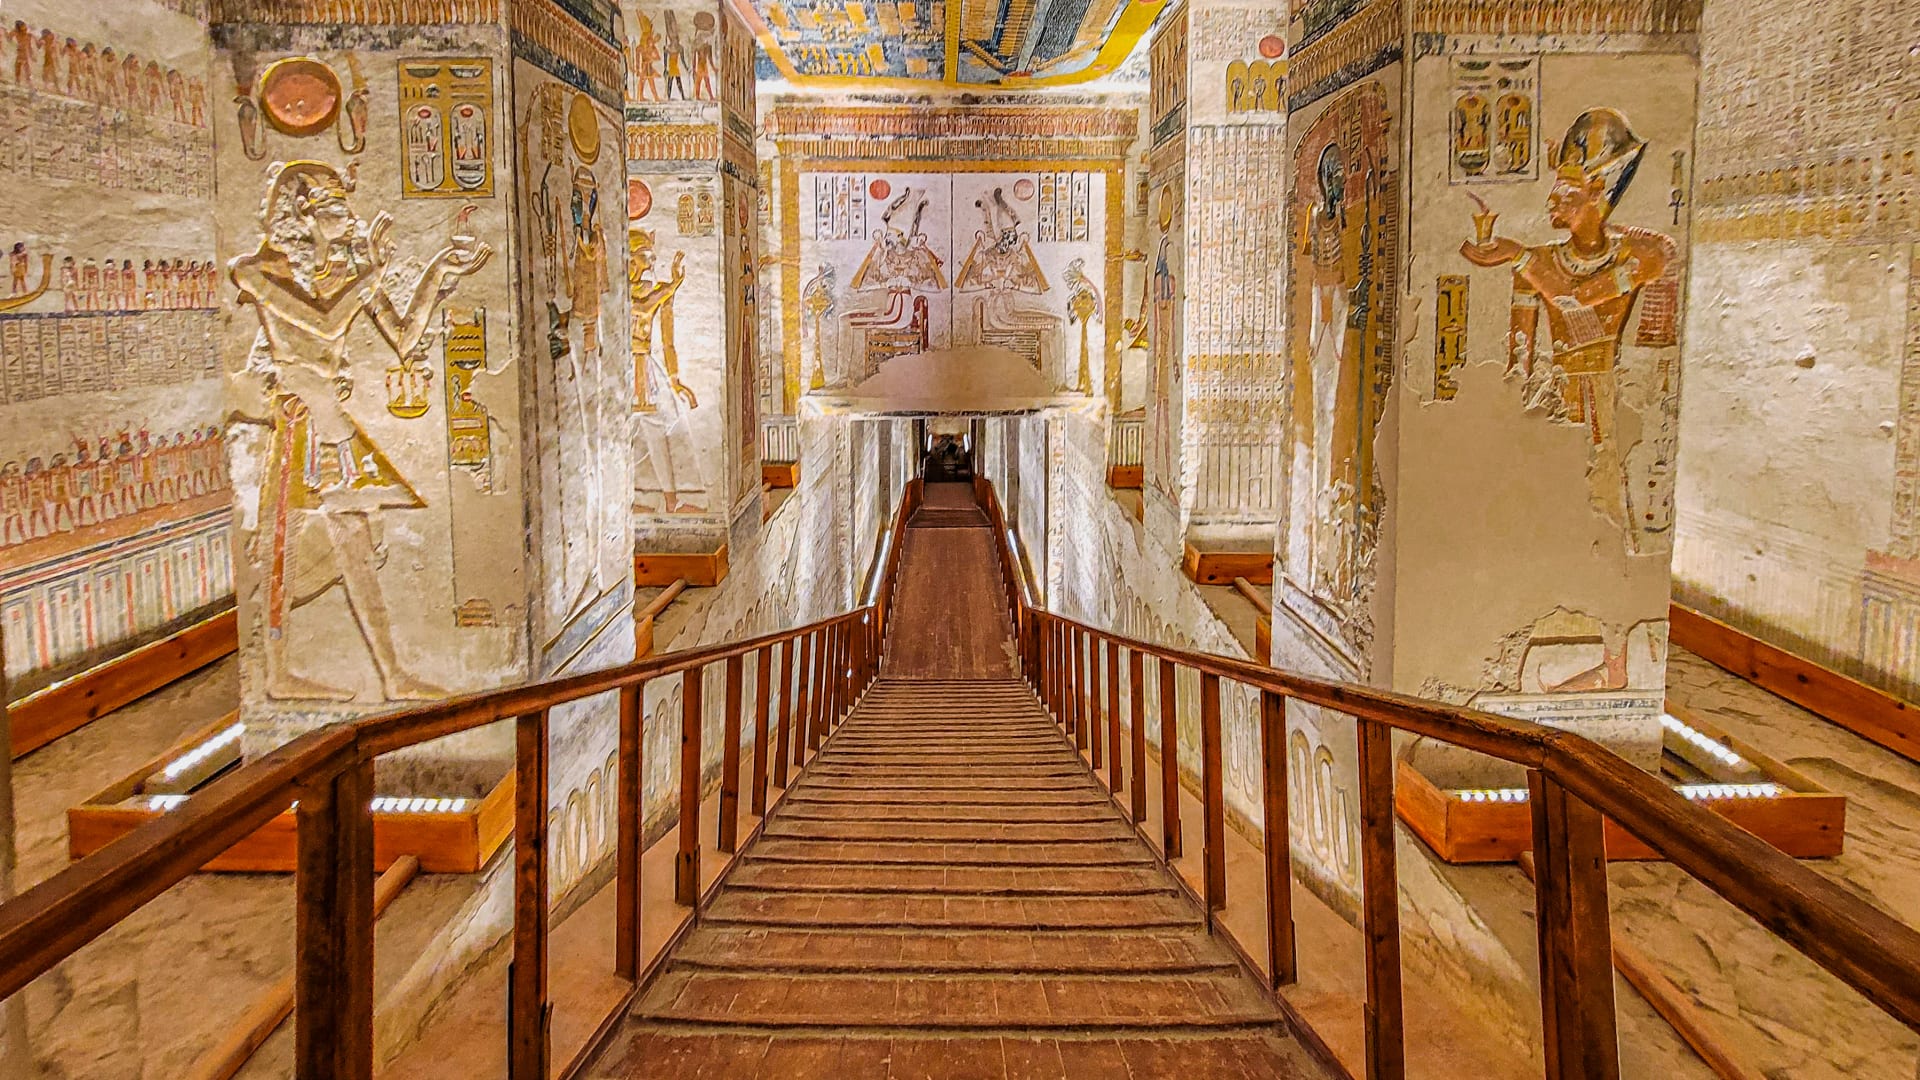 لوحة فنية ضخمة..تعرف لأحد أشهر المقابر الفرعونية بتاريخ مصر القديمة